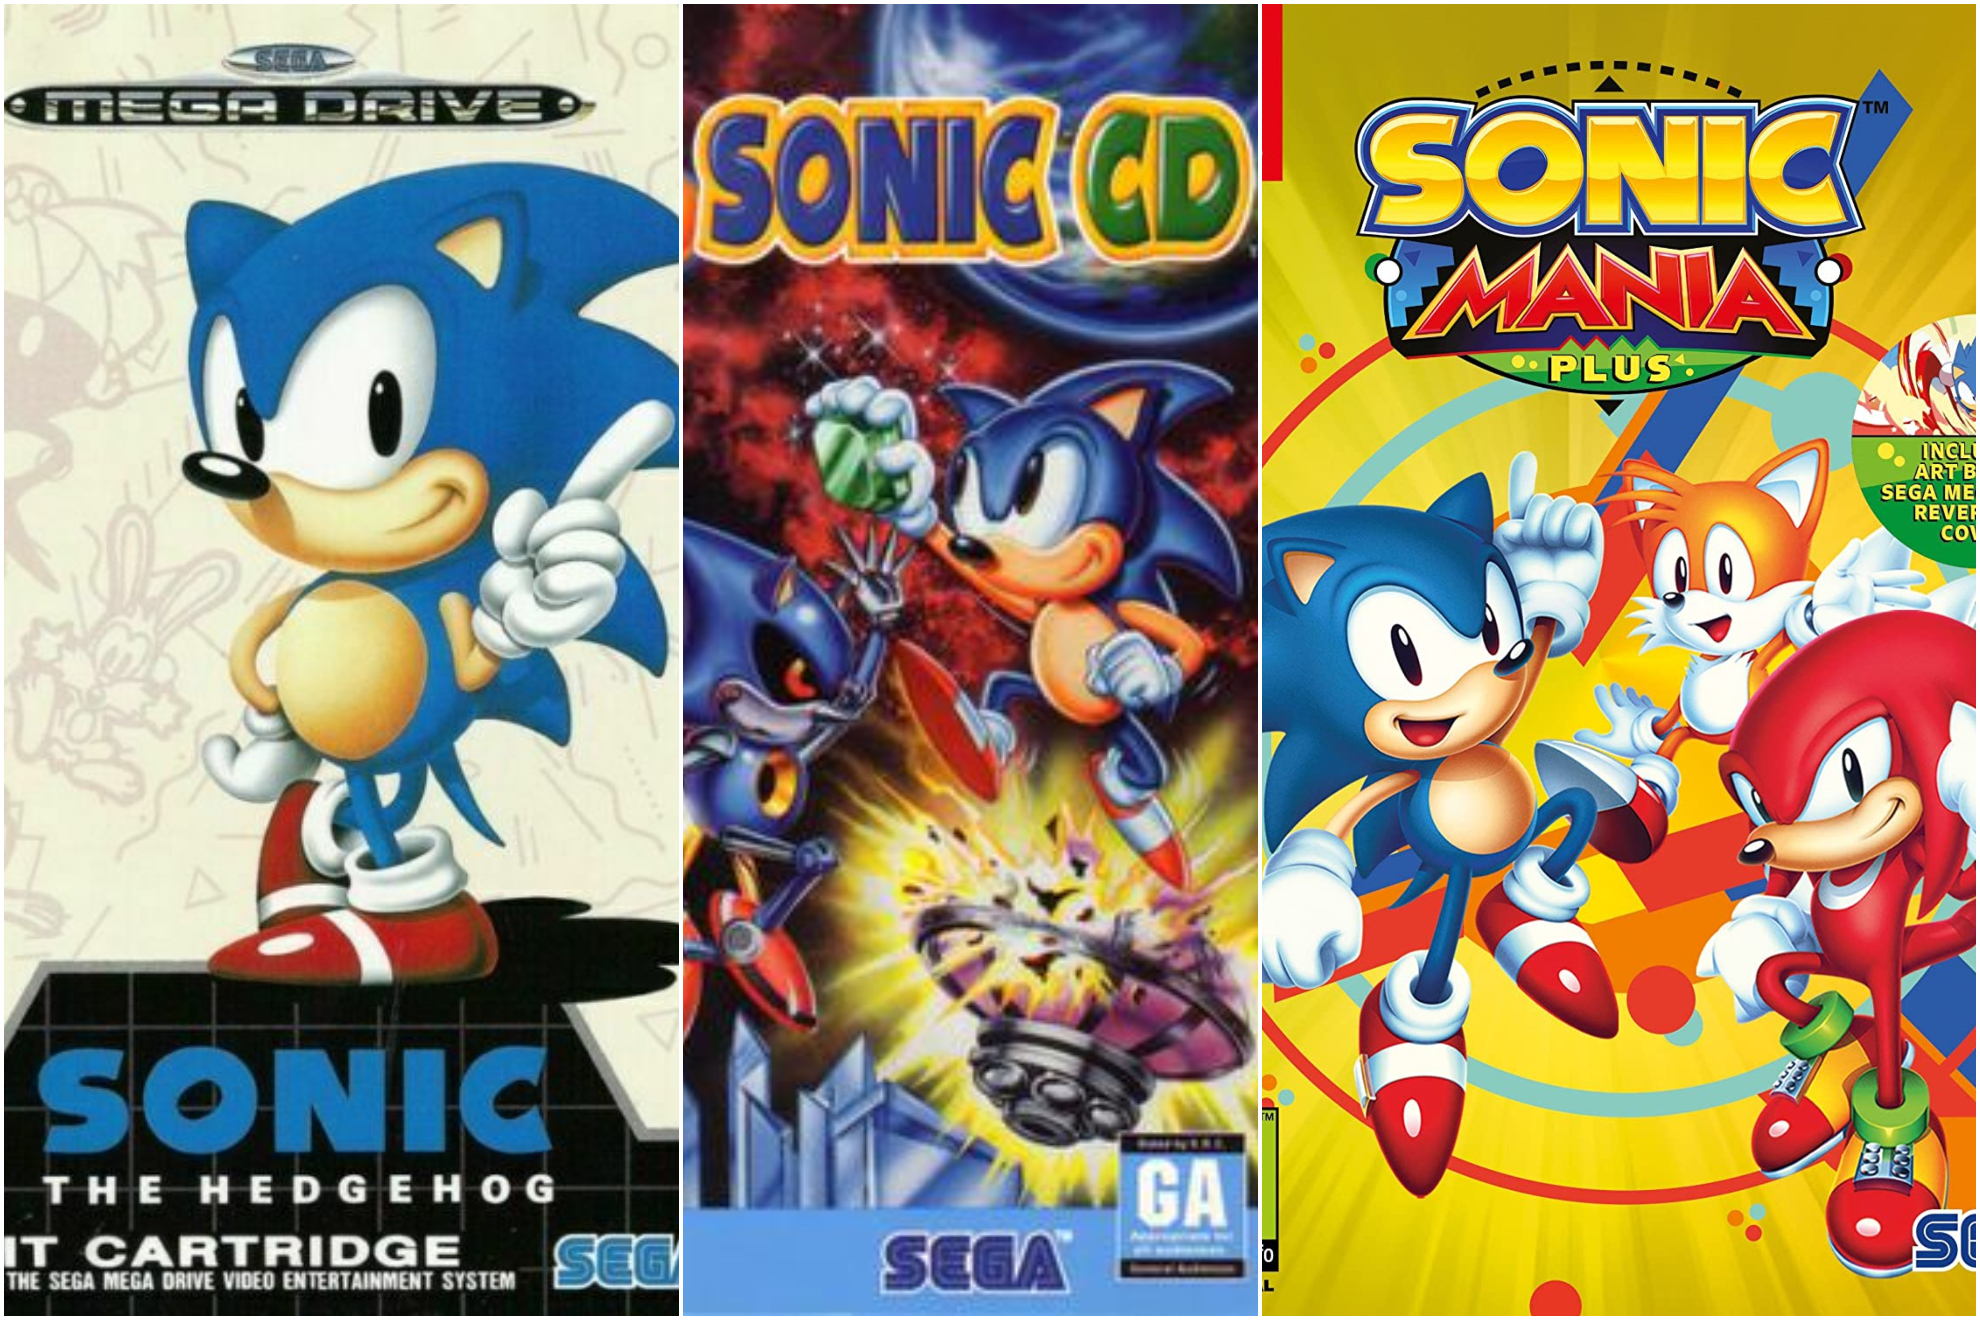 Maratón de Sonic? Este es el orden cronológico para jugar, desde Sonic the  Hedgehog a Sonic Frontiers | Marca